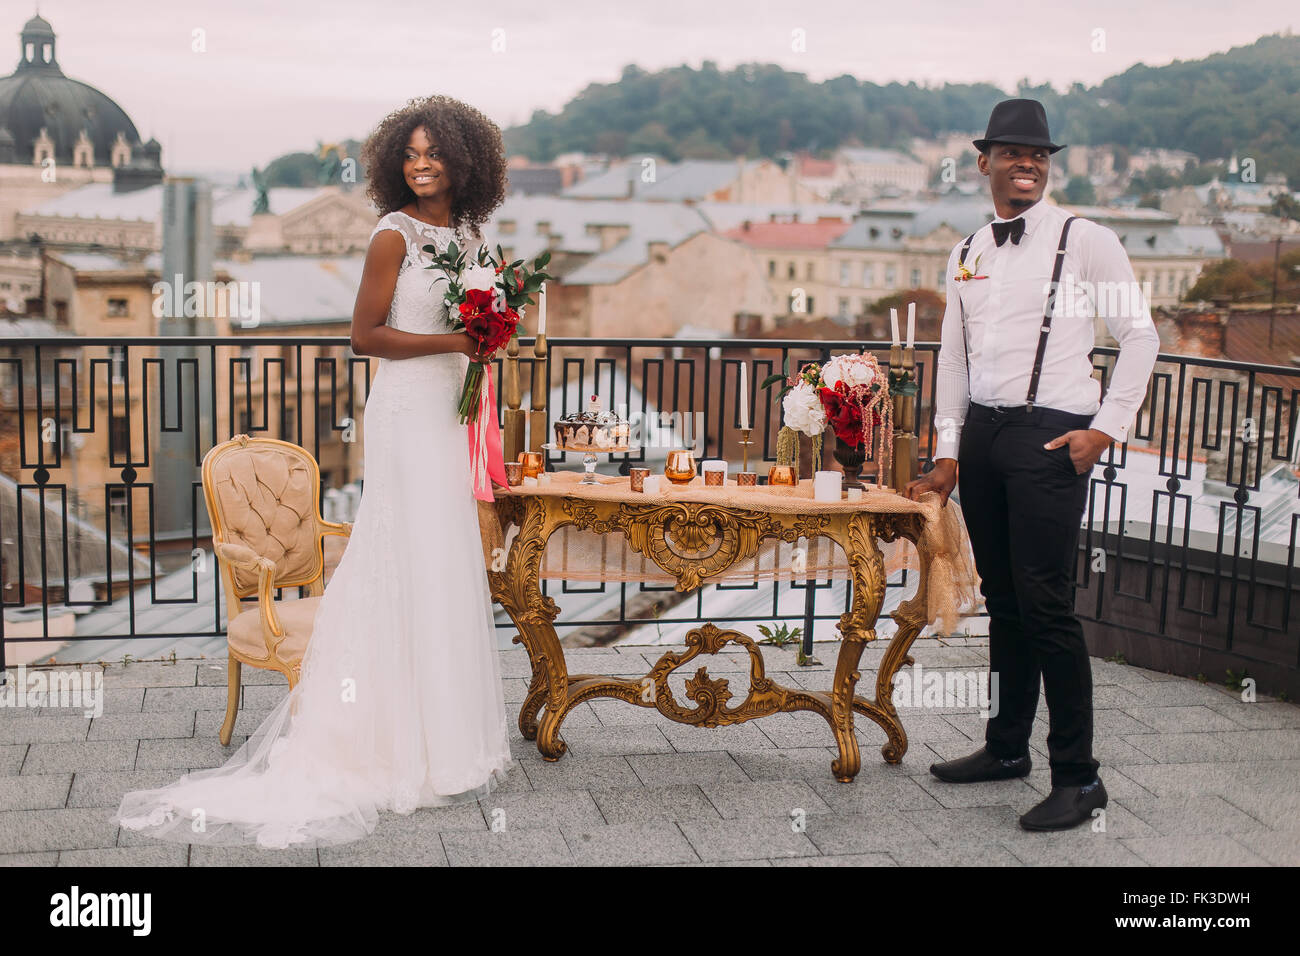 Heureux nouveaux mariés noir souriant joyeusement sur la terrasse près de la table de mariage Banque D'Images